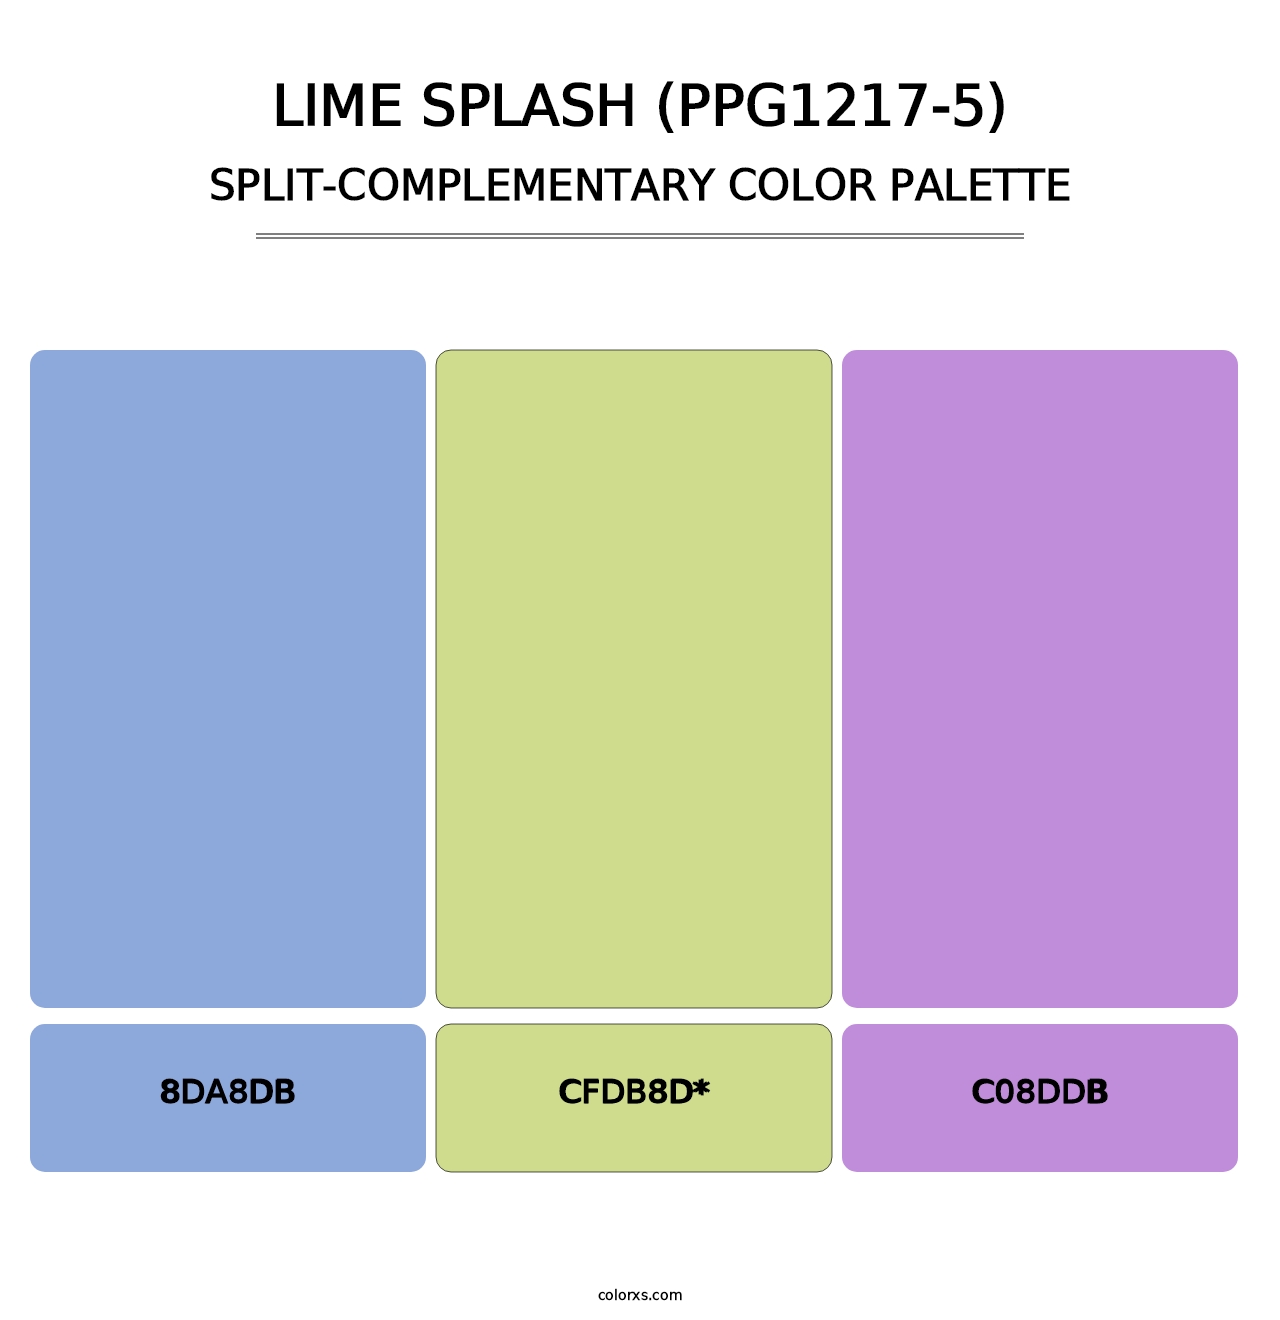 Lime Splash (PPG1217-5) - Split-Complementary Color Palette